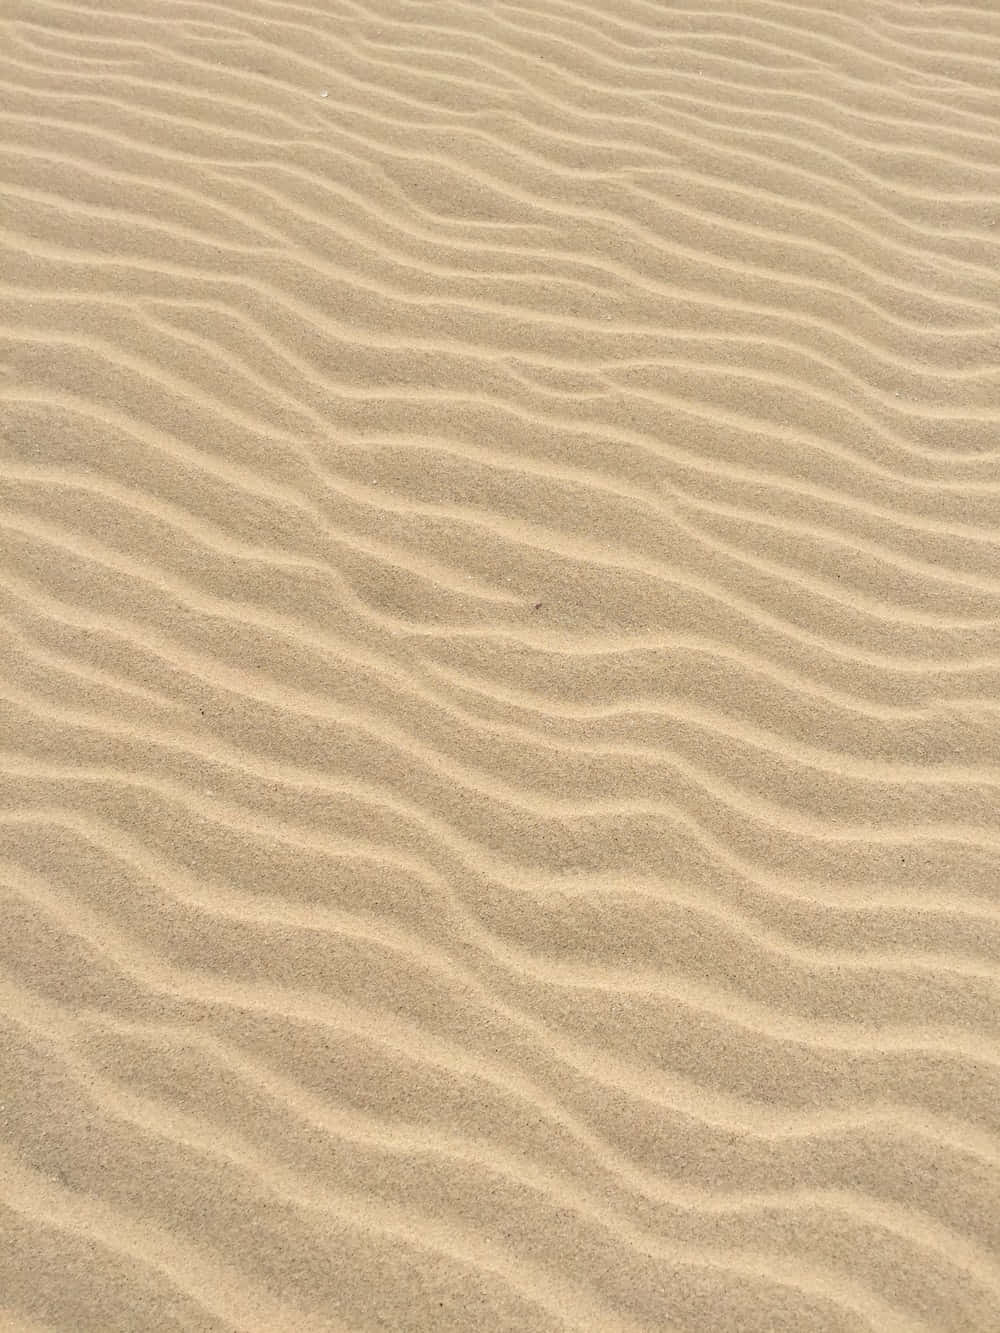 Strandsand Wellen Textur Bild